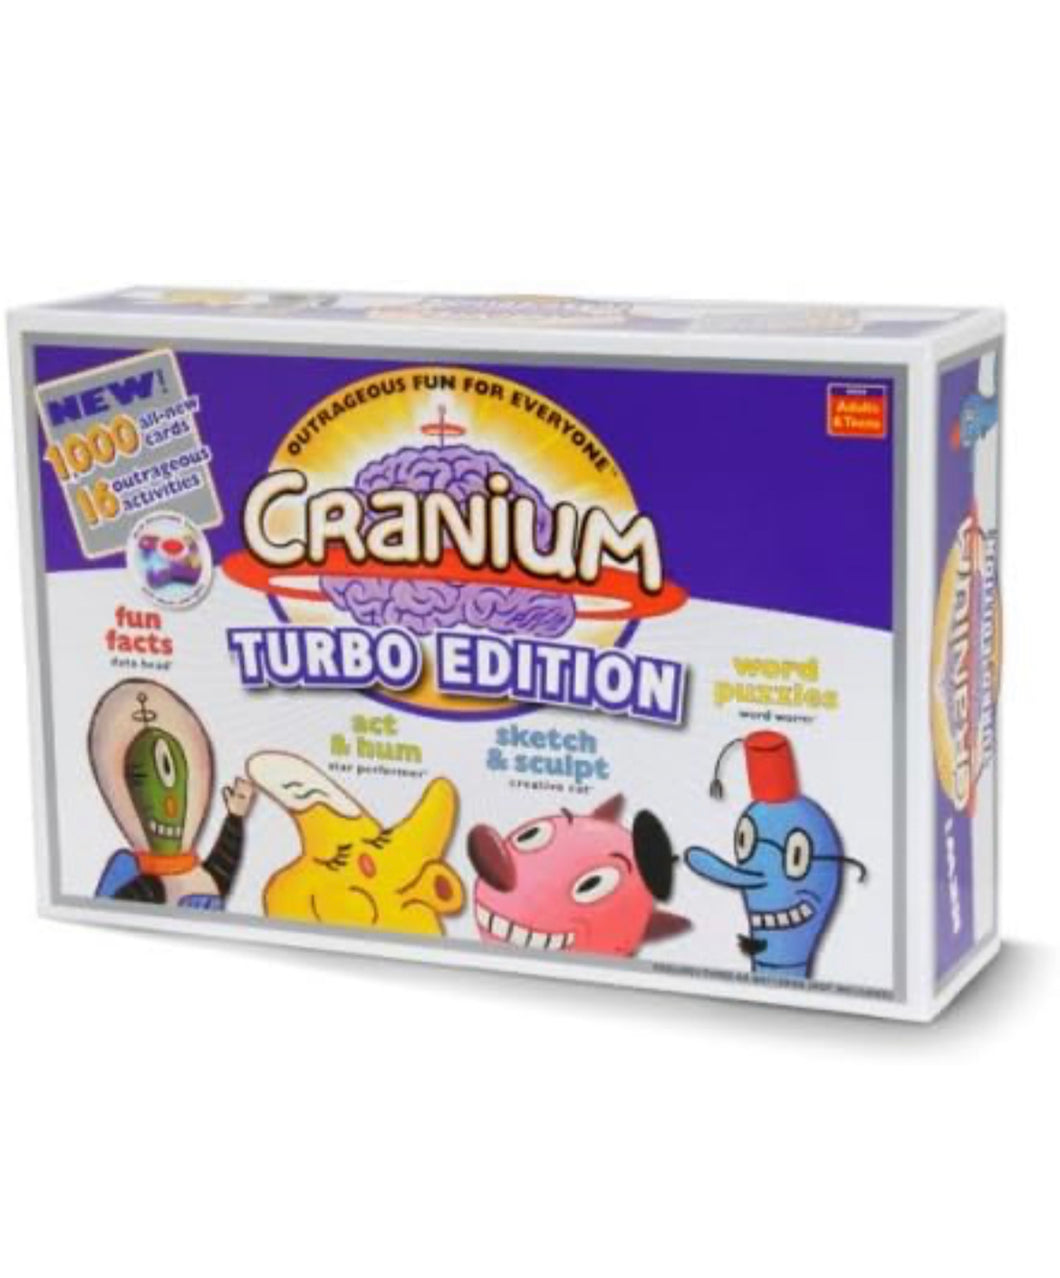 CRANIUM Turbo Edition- NEW IN BOX!!!